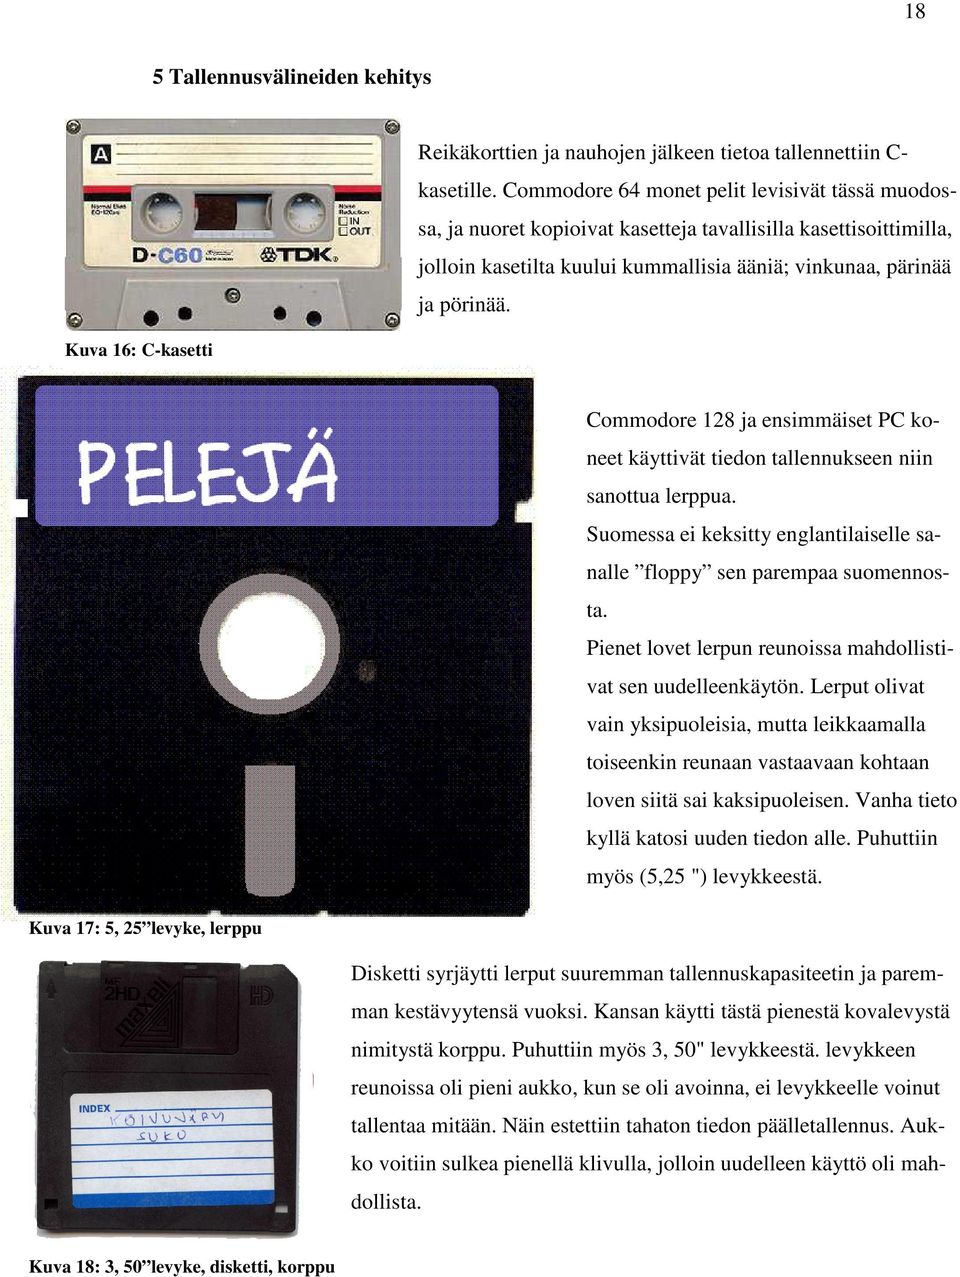 Kuva 17: 5, 25 levyke, lerppu Commodore 128 ja ensimmäiset PC koneet käyttivät tiedon tallennukseen niin sanottua lerppua.